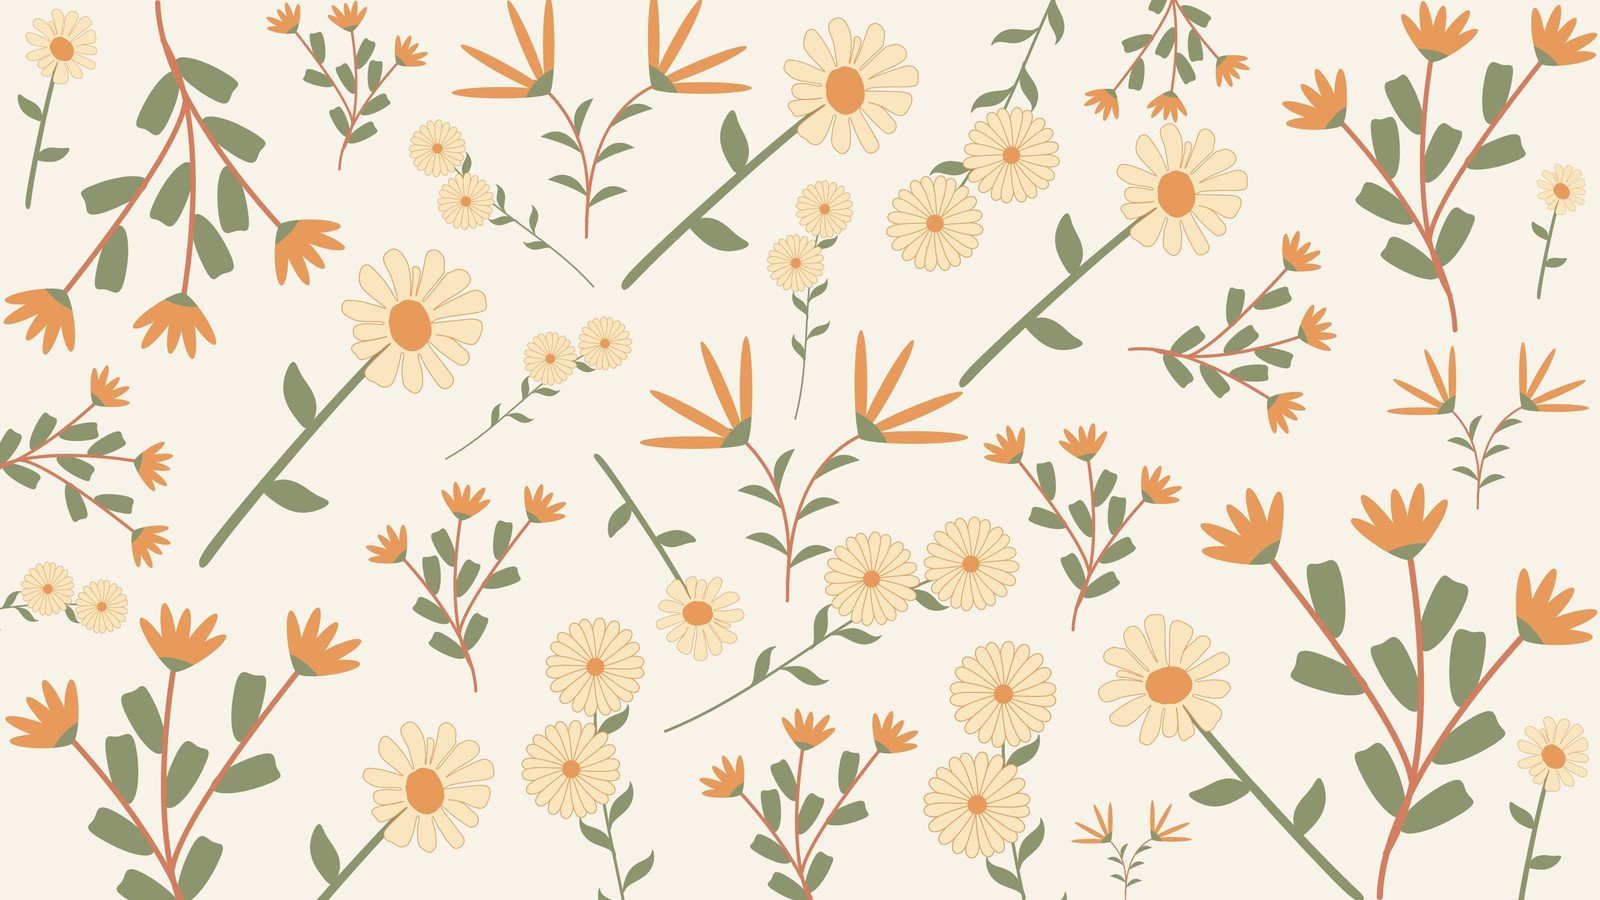 Yellow Aesthetic Flower Desktop Wallpapers